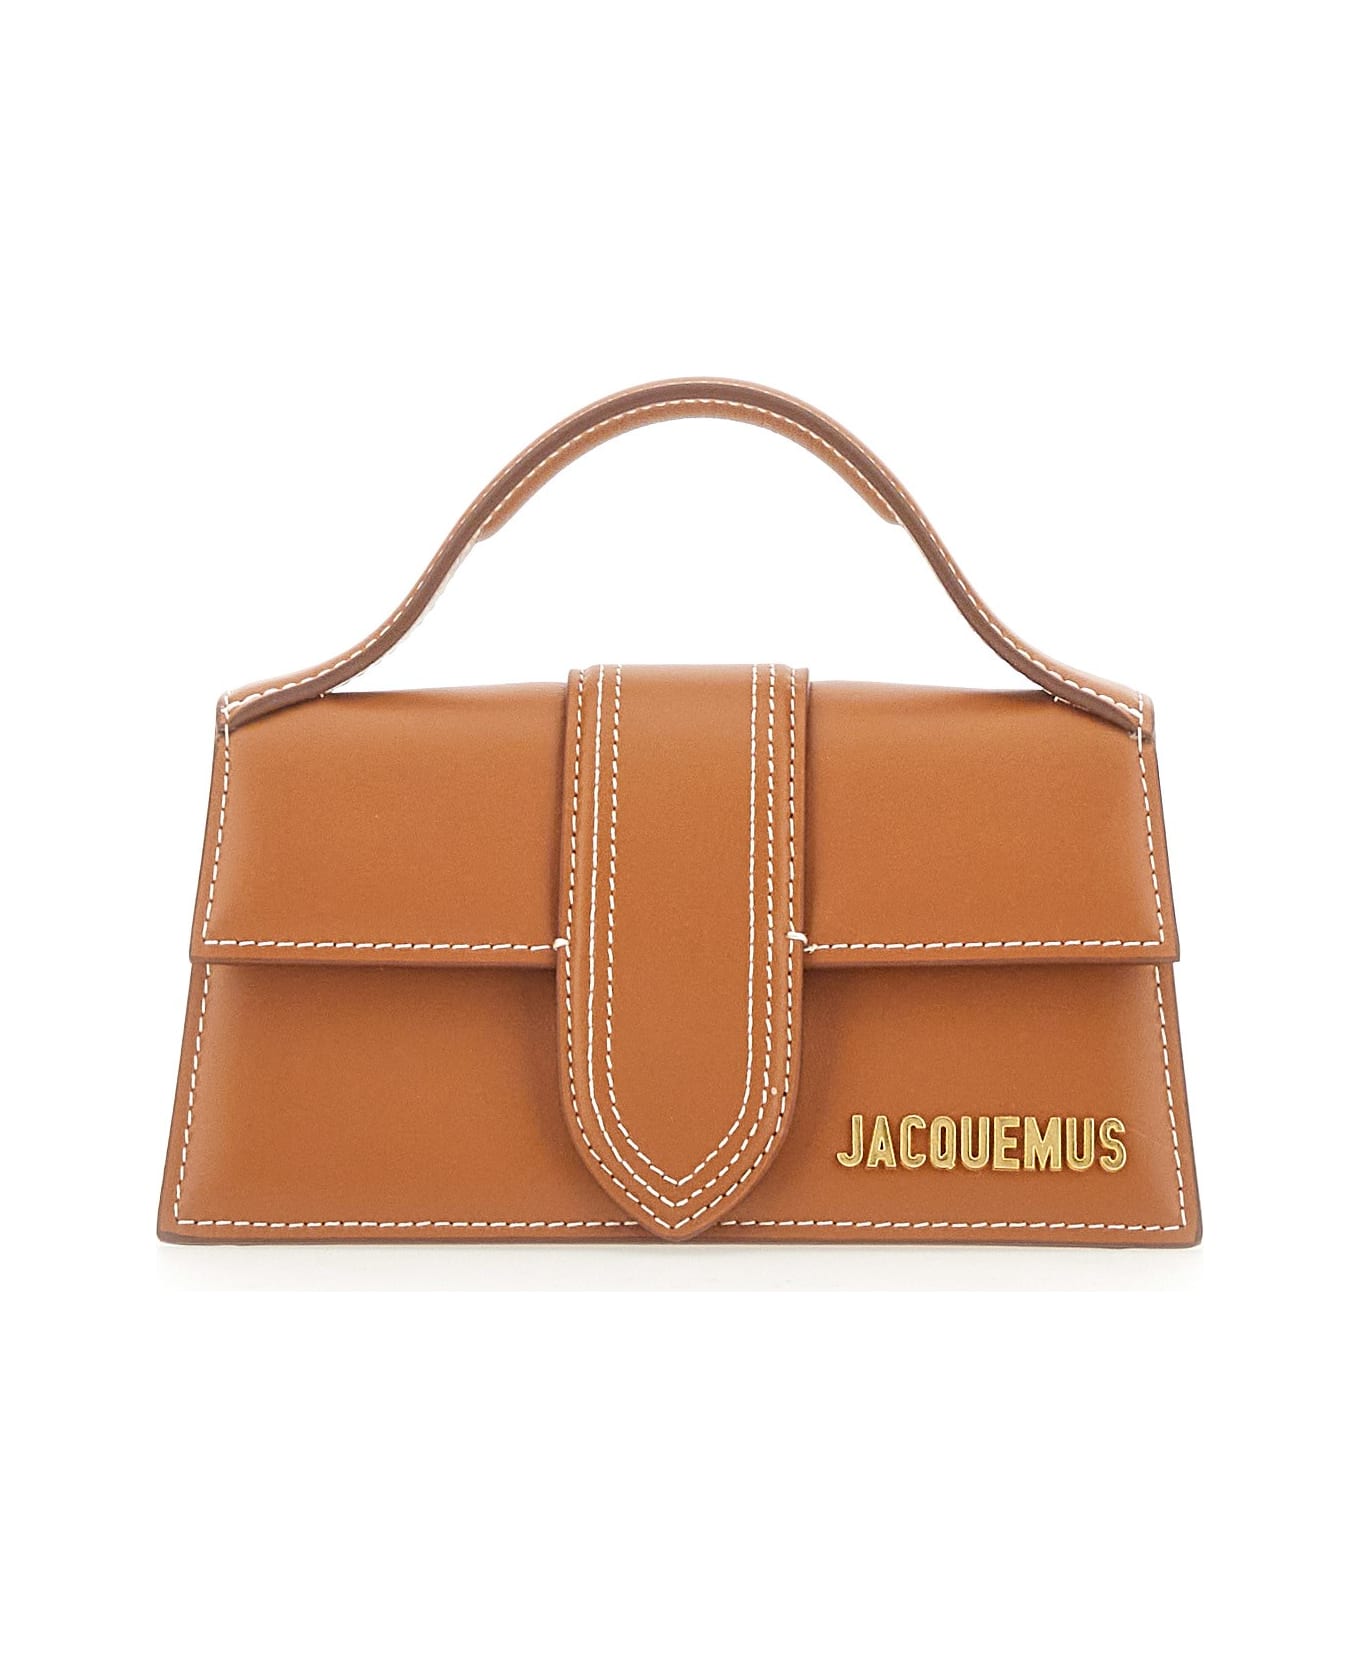 Jacquemus Le Bambino Top Handle Bag